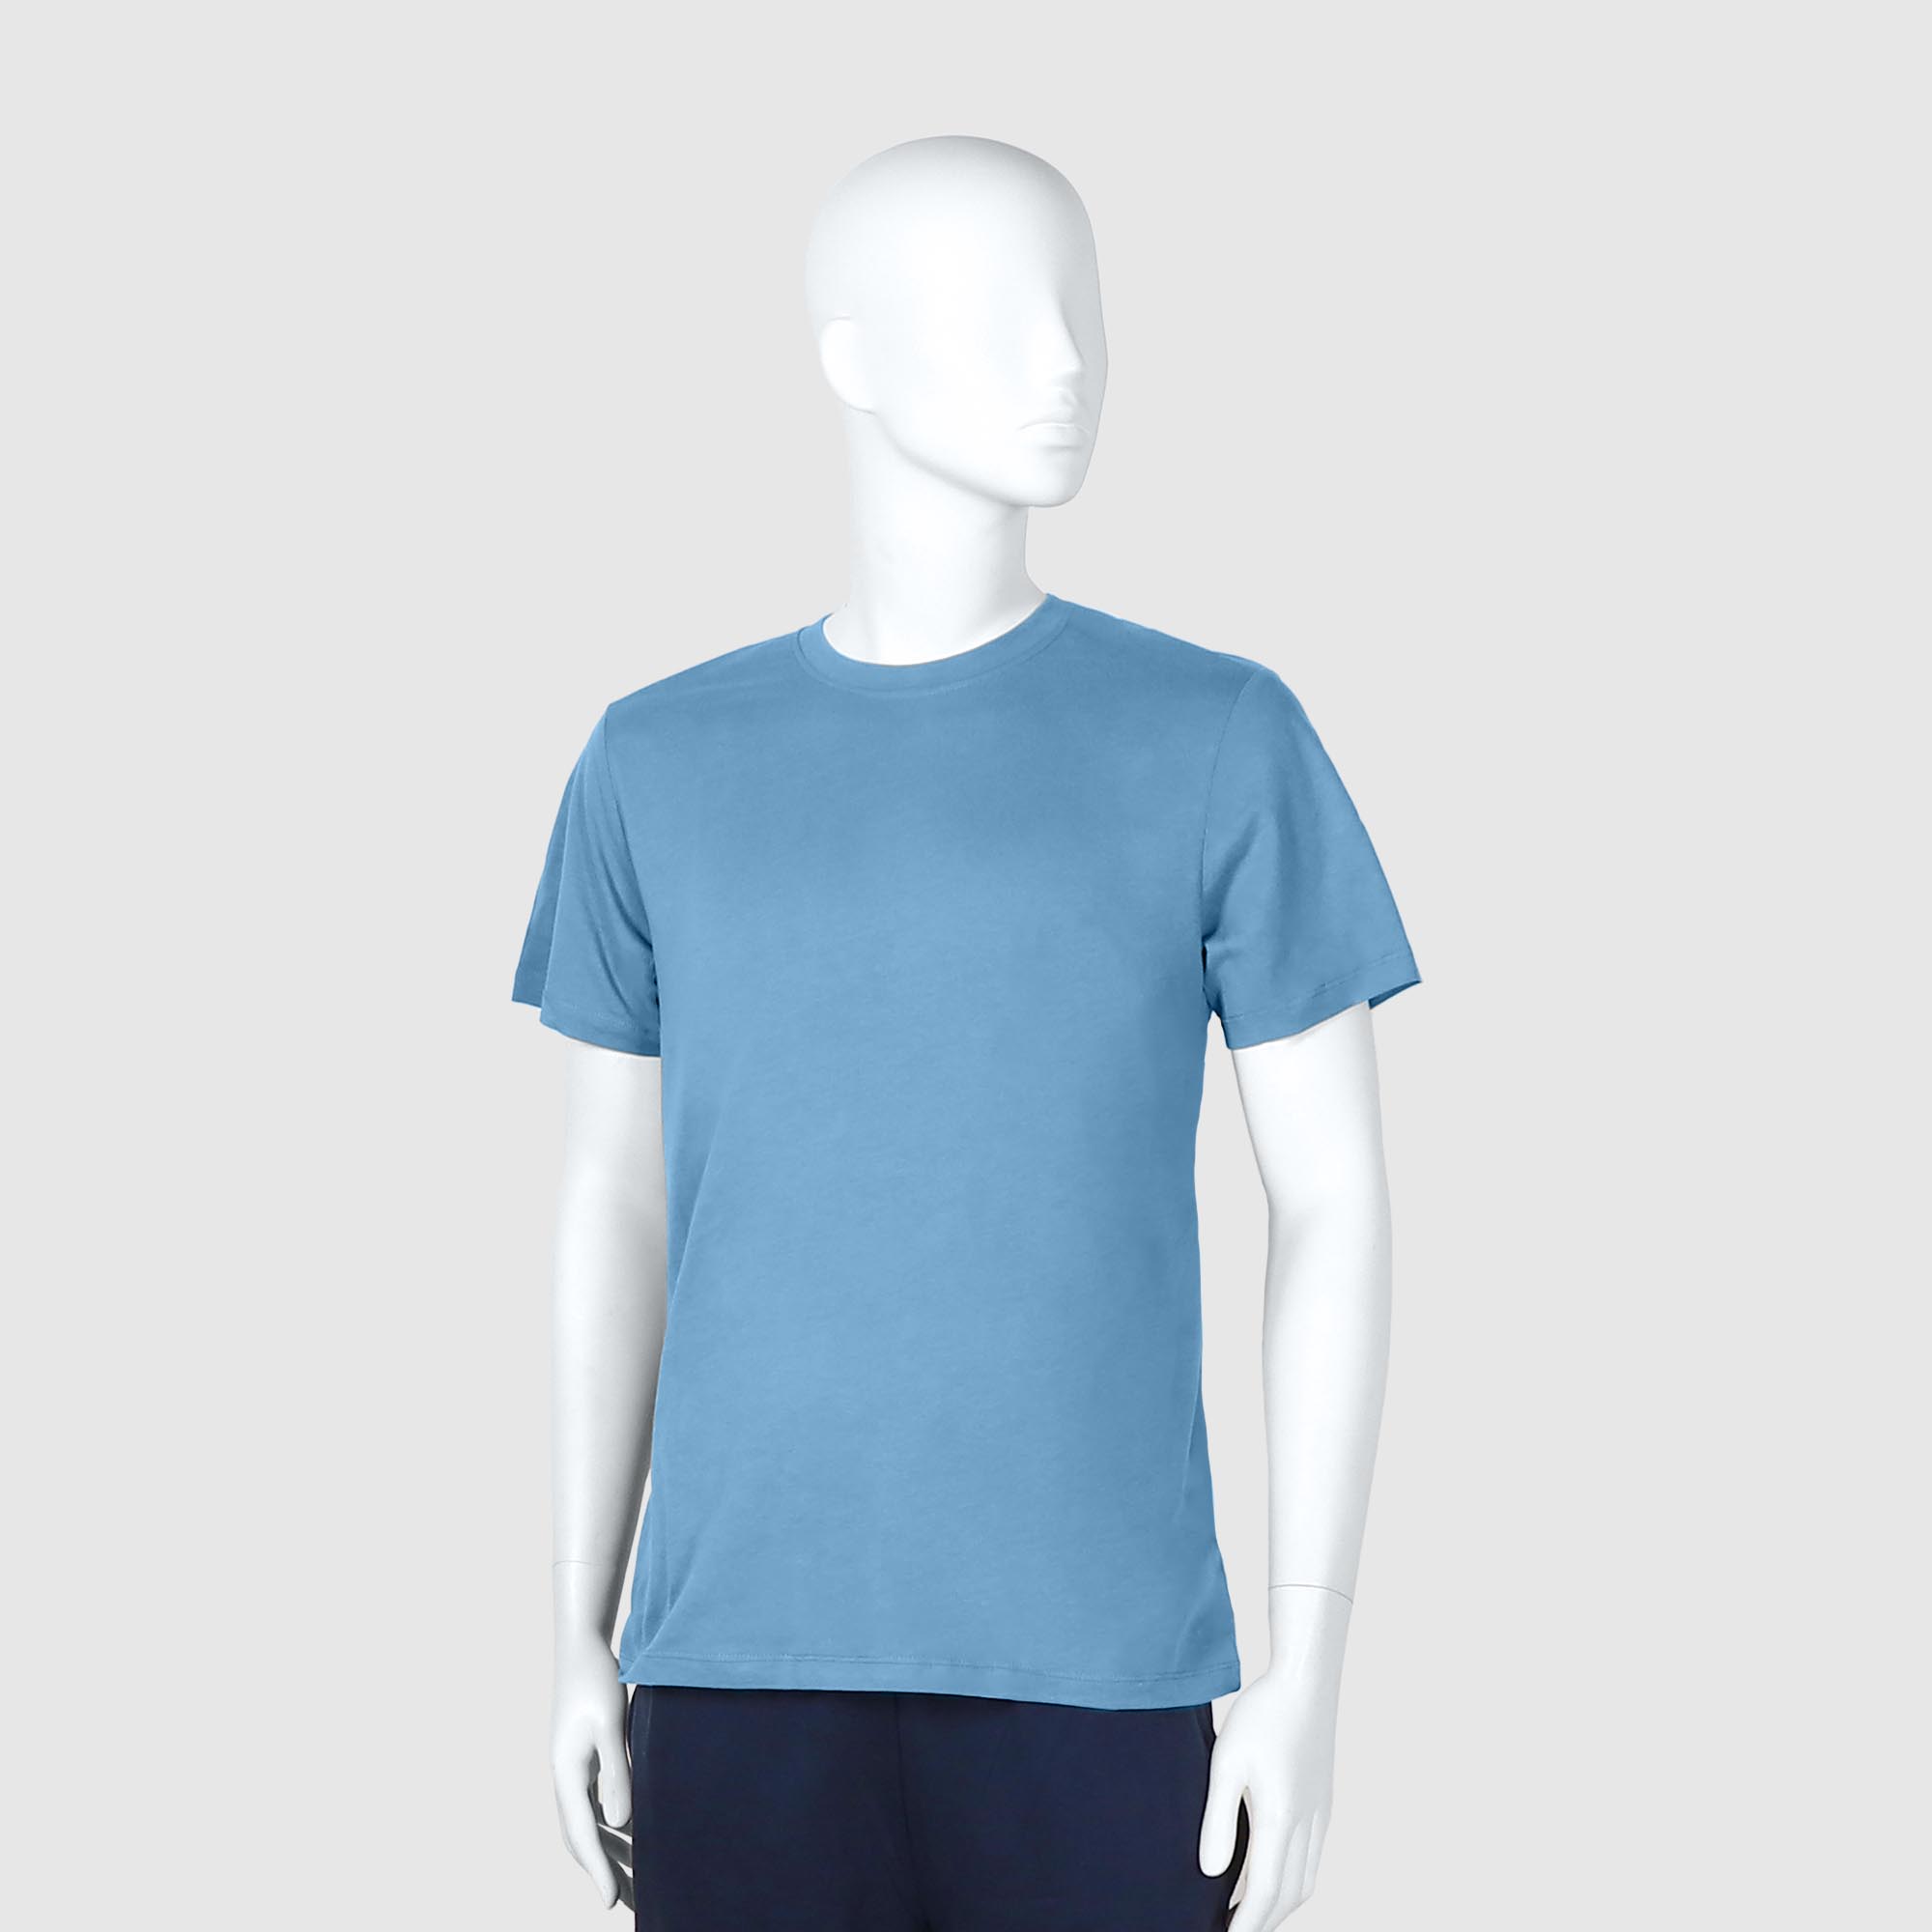 Мужская футболка Diva Teks голубая (DTD-03), цвет голубой, размер 48-50